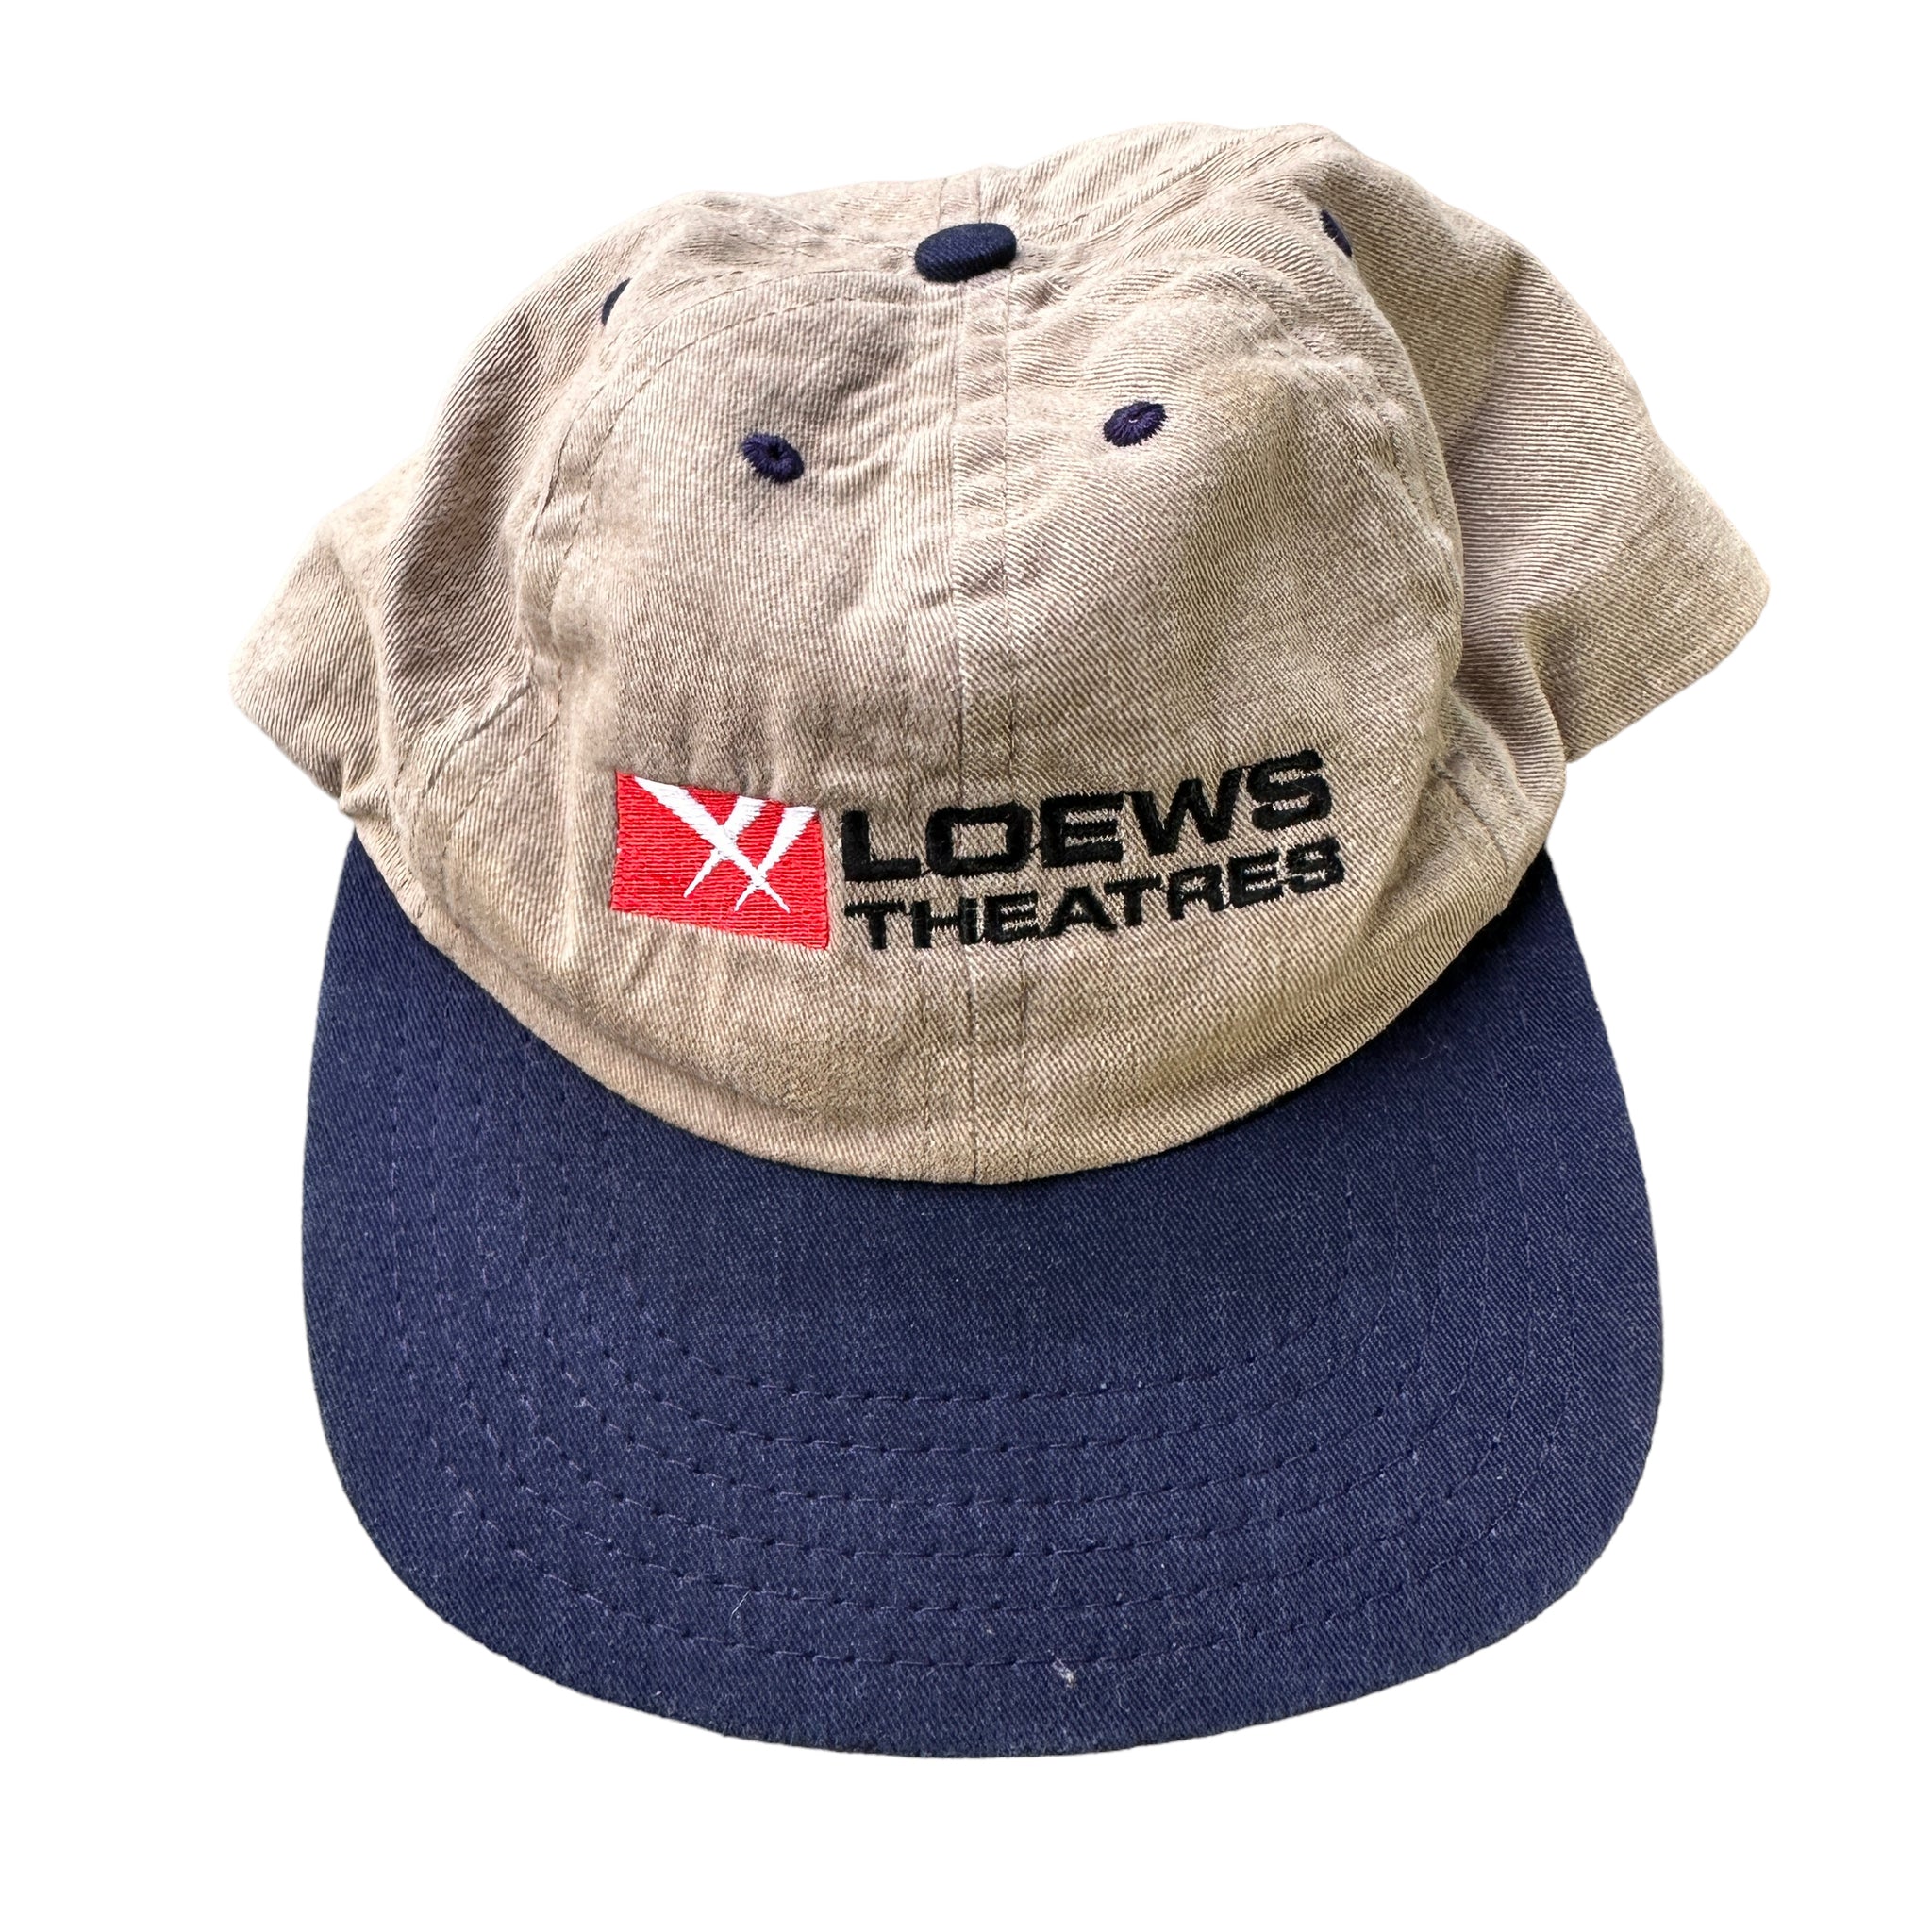 LOEWS theatres hat